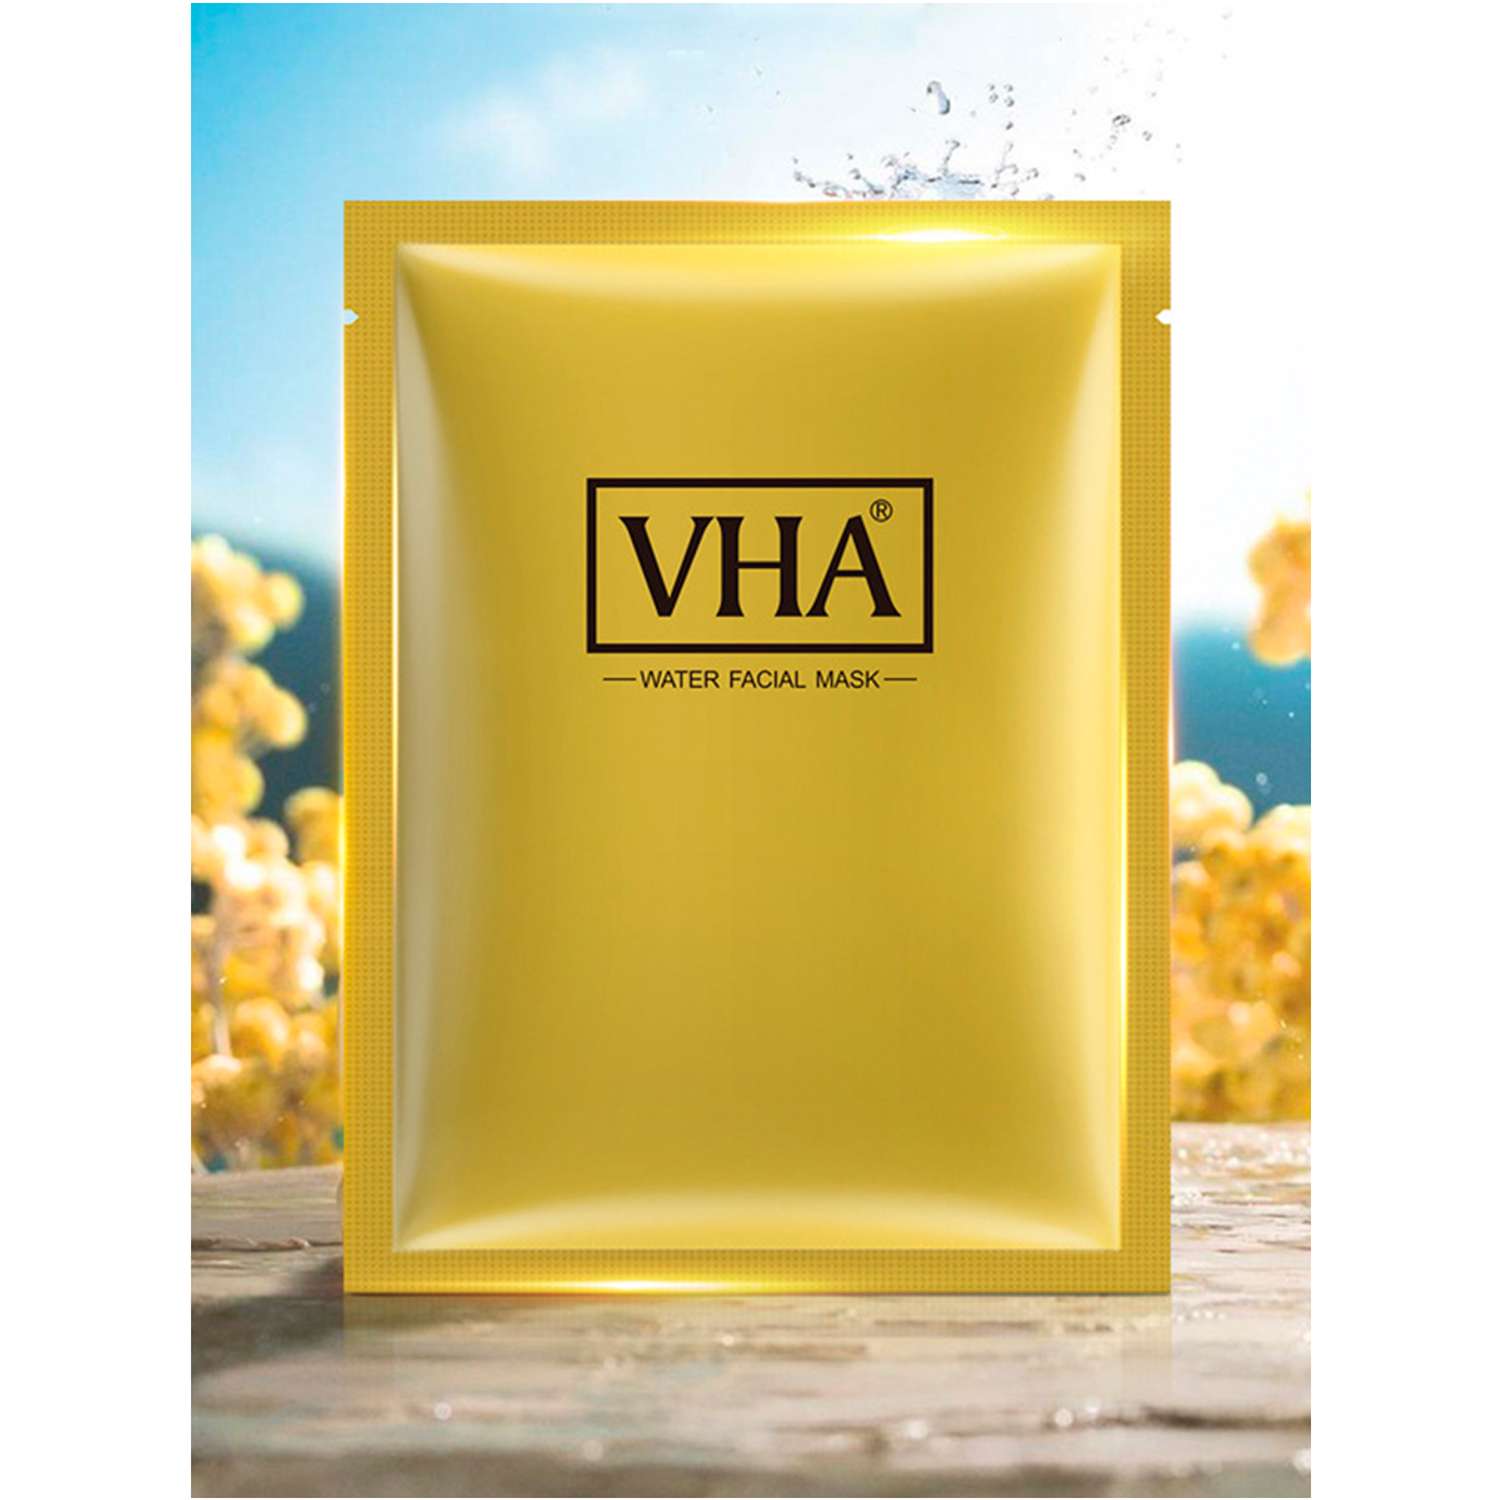 Омолаживающая маска для лица VHA с протеинами шелка и муцином улитки упаковка 25 гр х 10 шт - фото 2